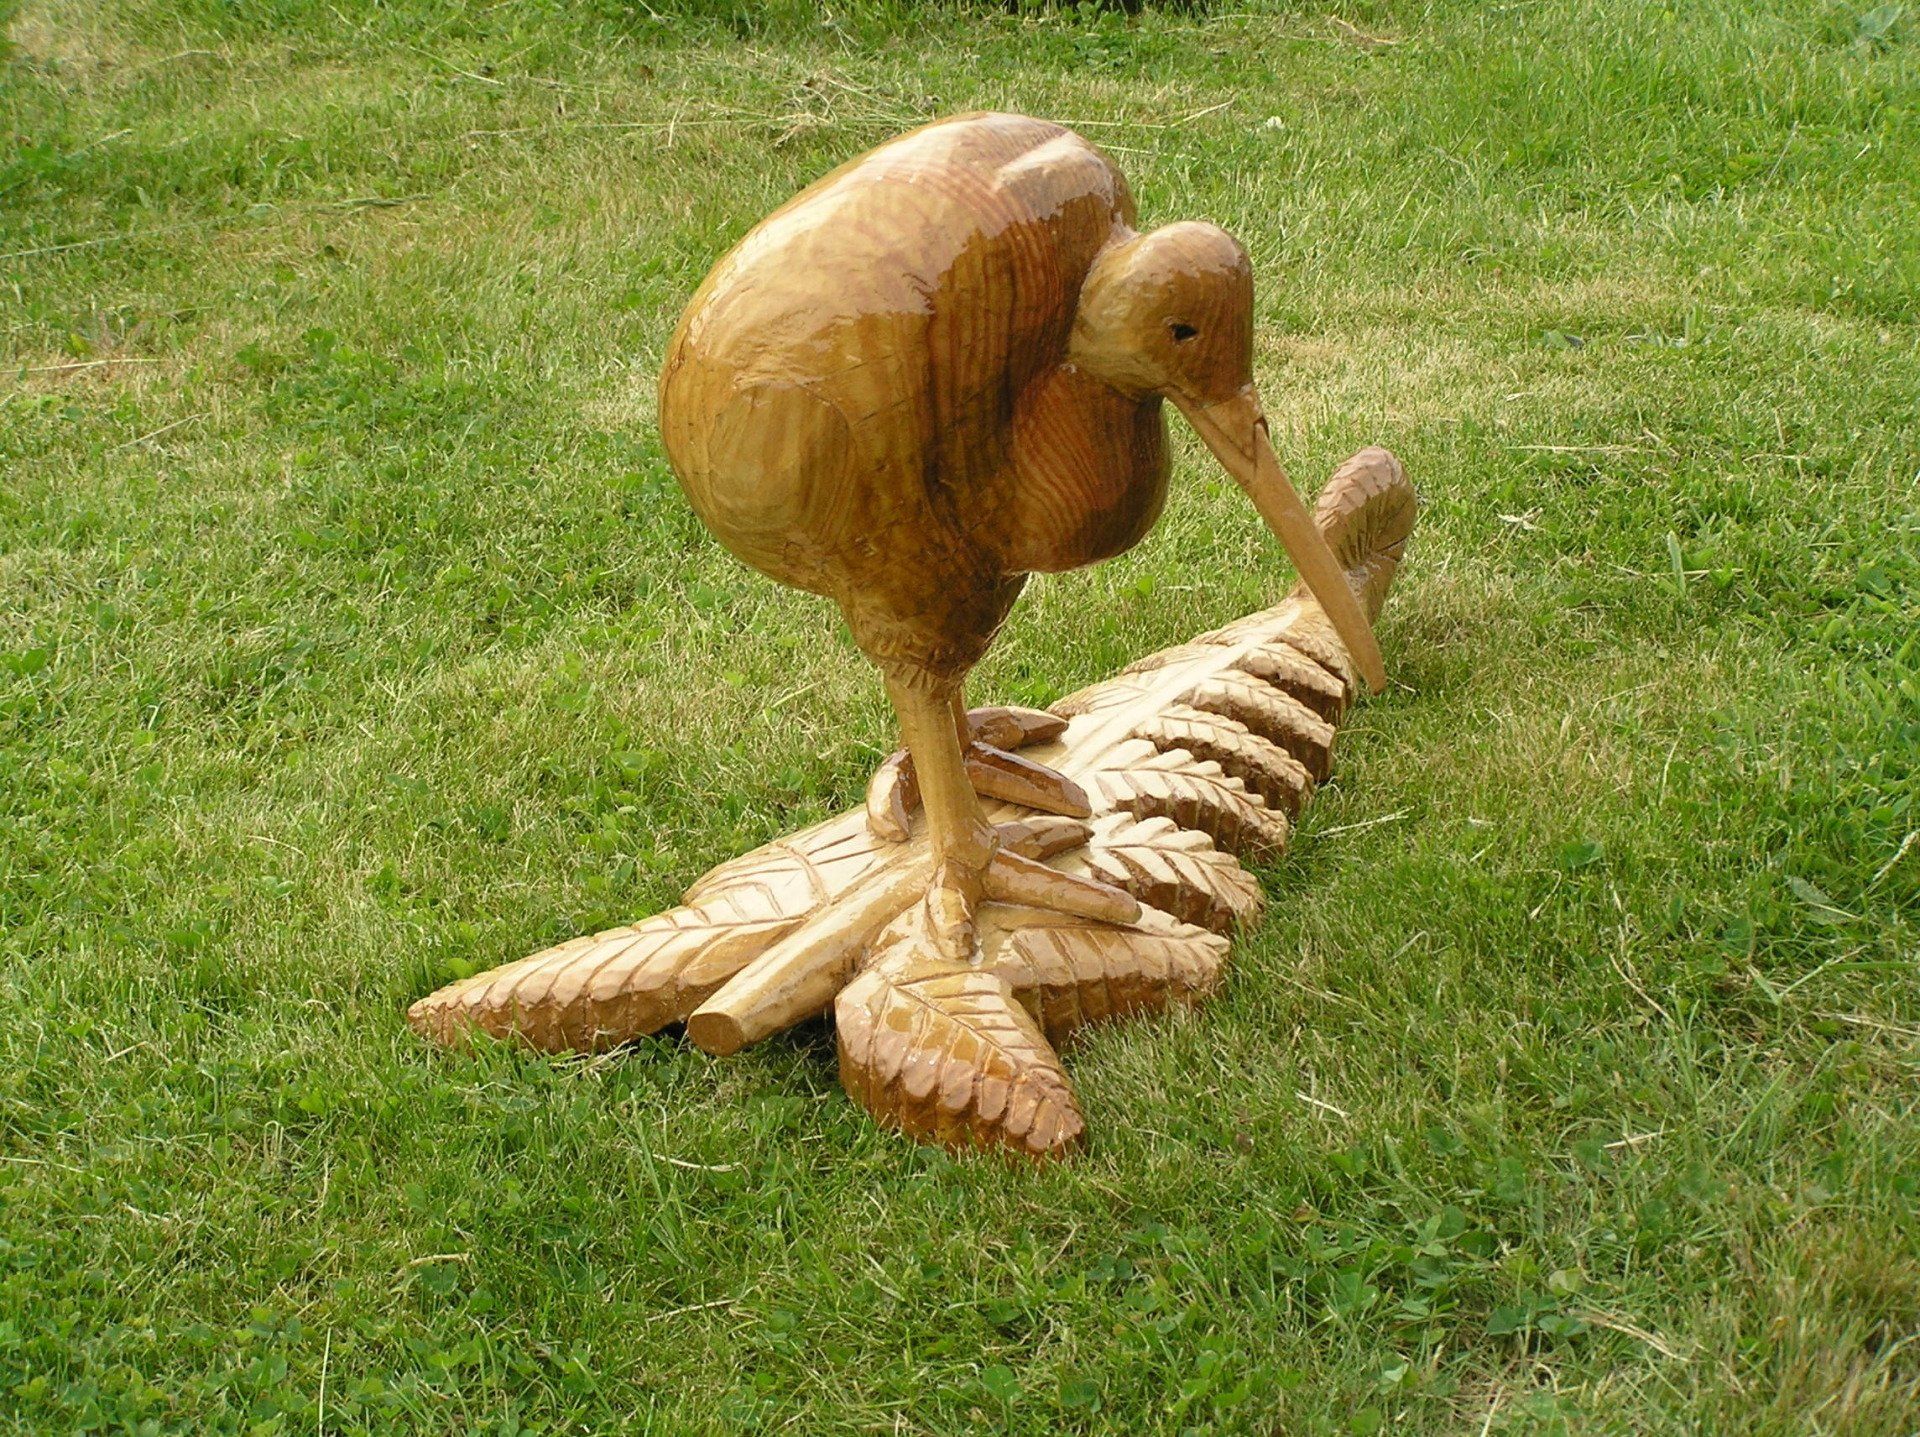 UK wooden garden sculpture of a kiwi bird